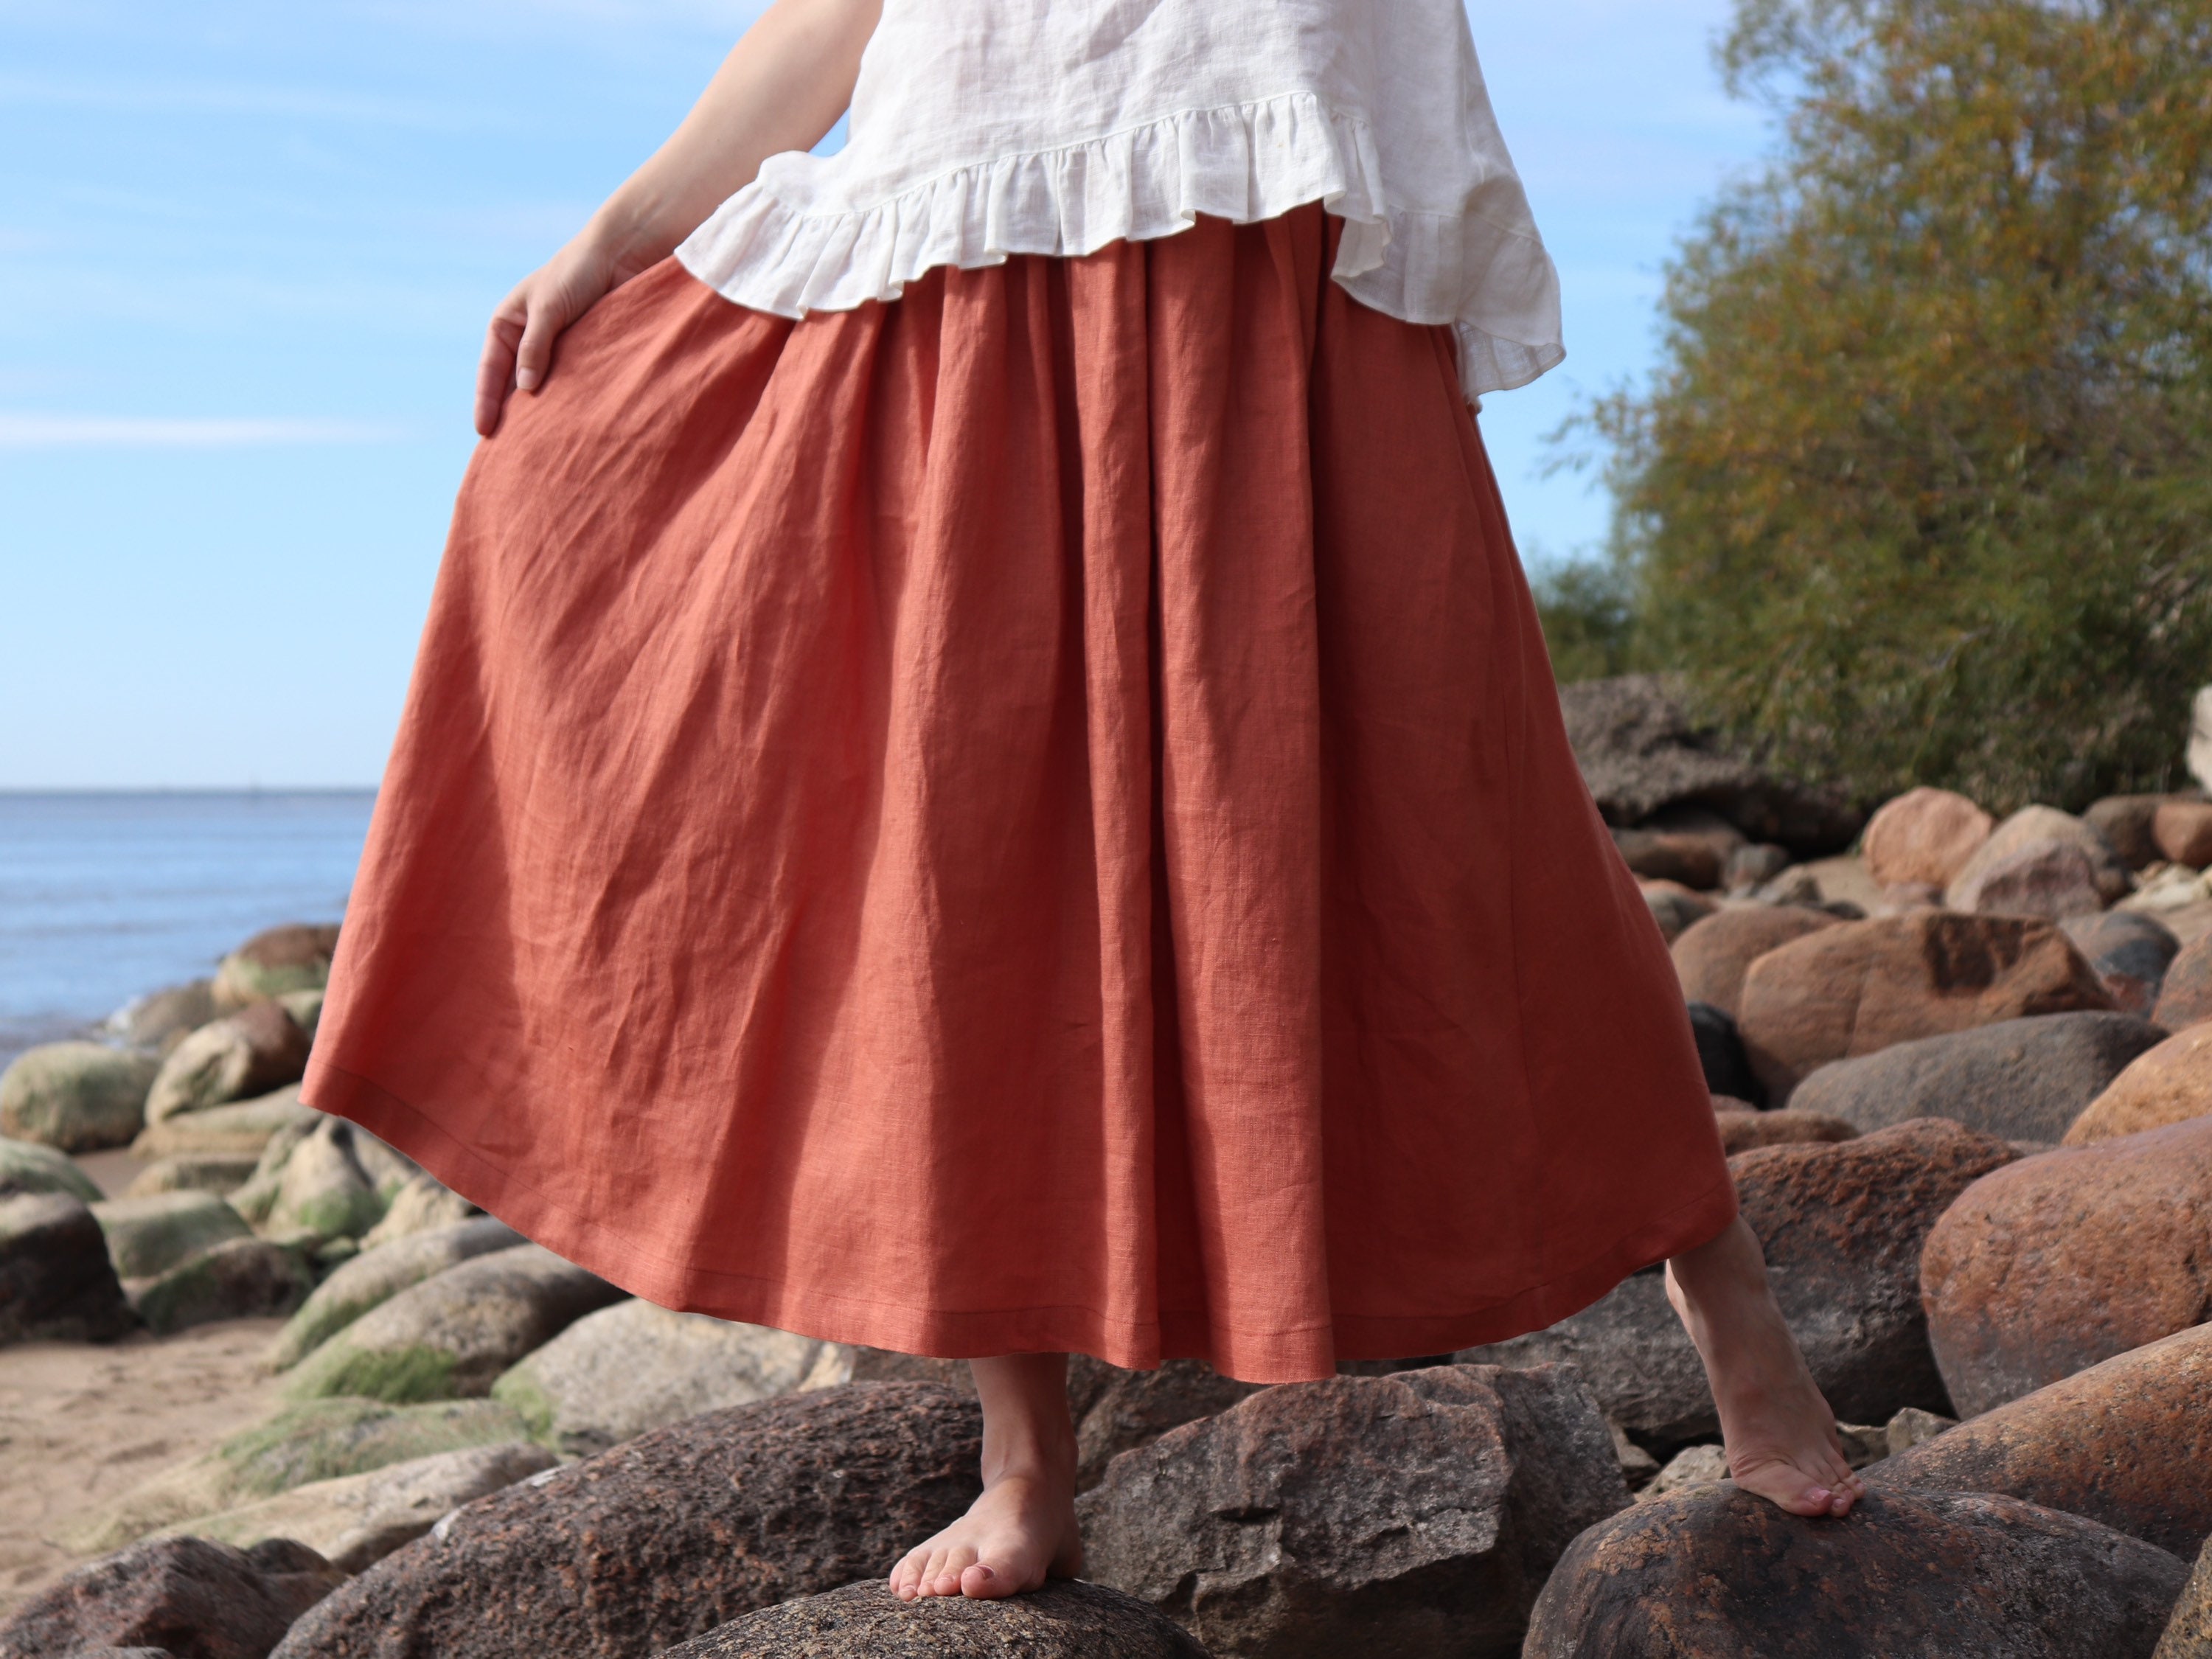 Linen Skirt, Long Linen Skirt, Asymmetrical Linen Skirt, Linen Maxi Skirt,  Feminine Unique Design Draped Fabric Casual Linen Skirt C154 - Etsy